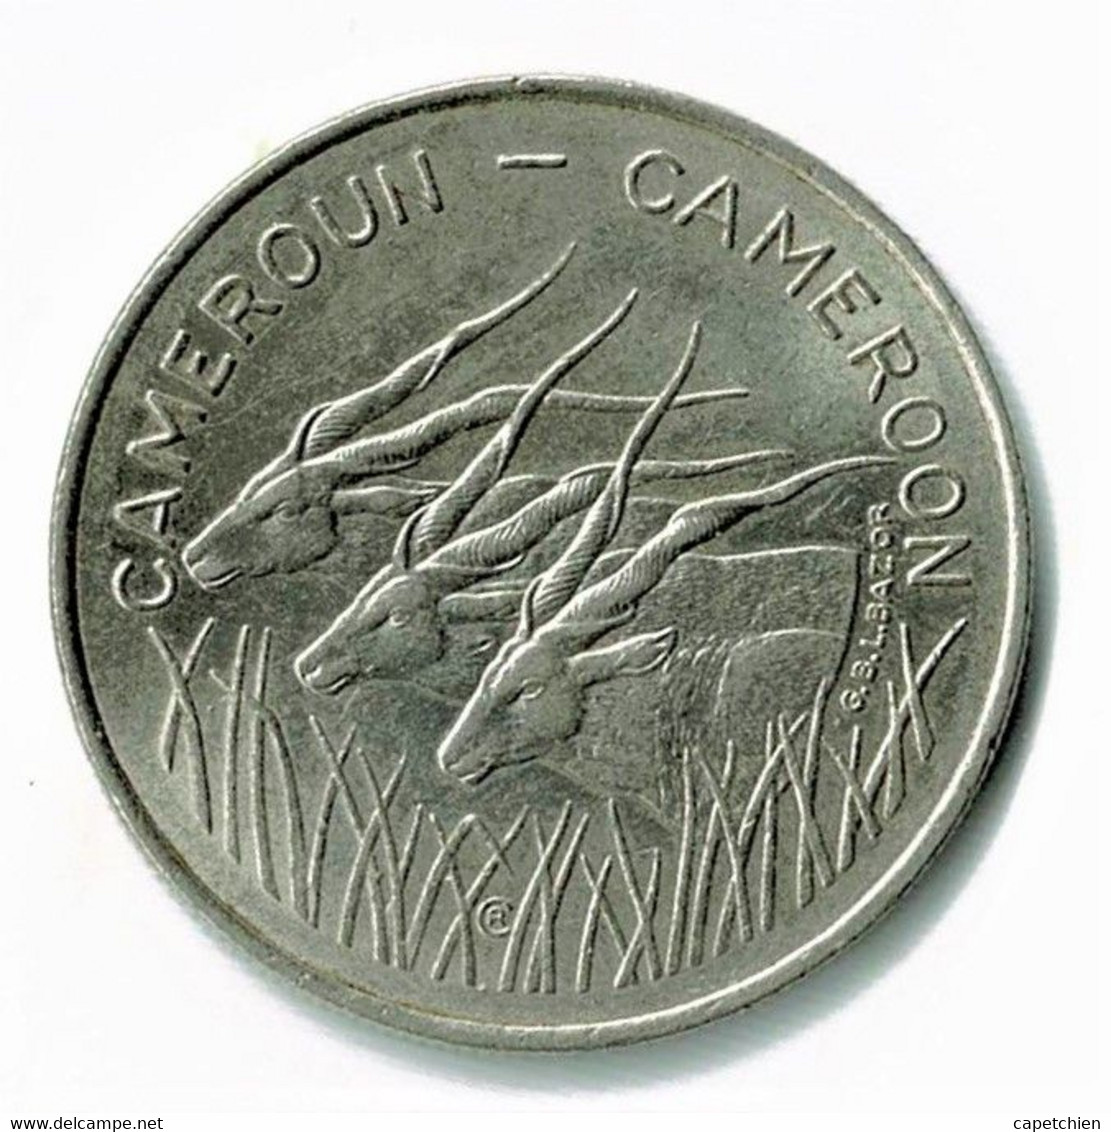 CAMEROUN / CAMEROON / BANQUE DE L'AFRIQUE CENTRALE / 100 FRANCS (CFA) 1975 / SUP - Camerun